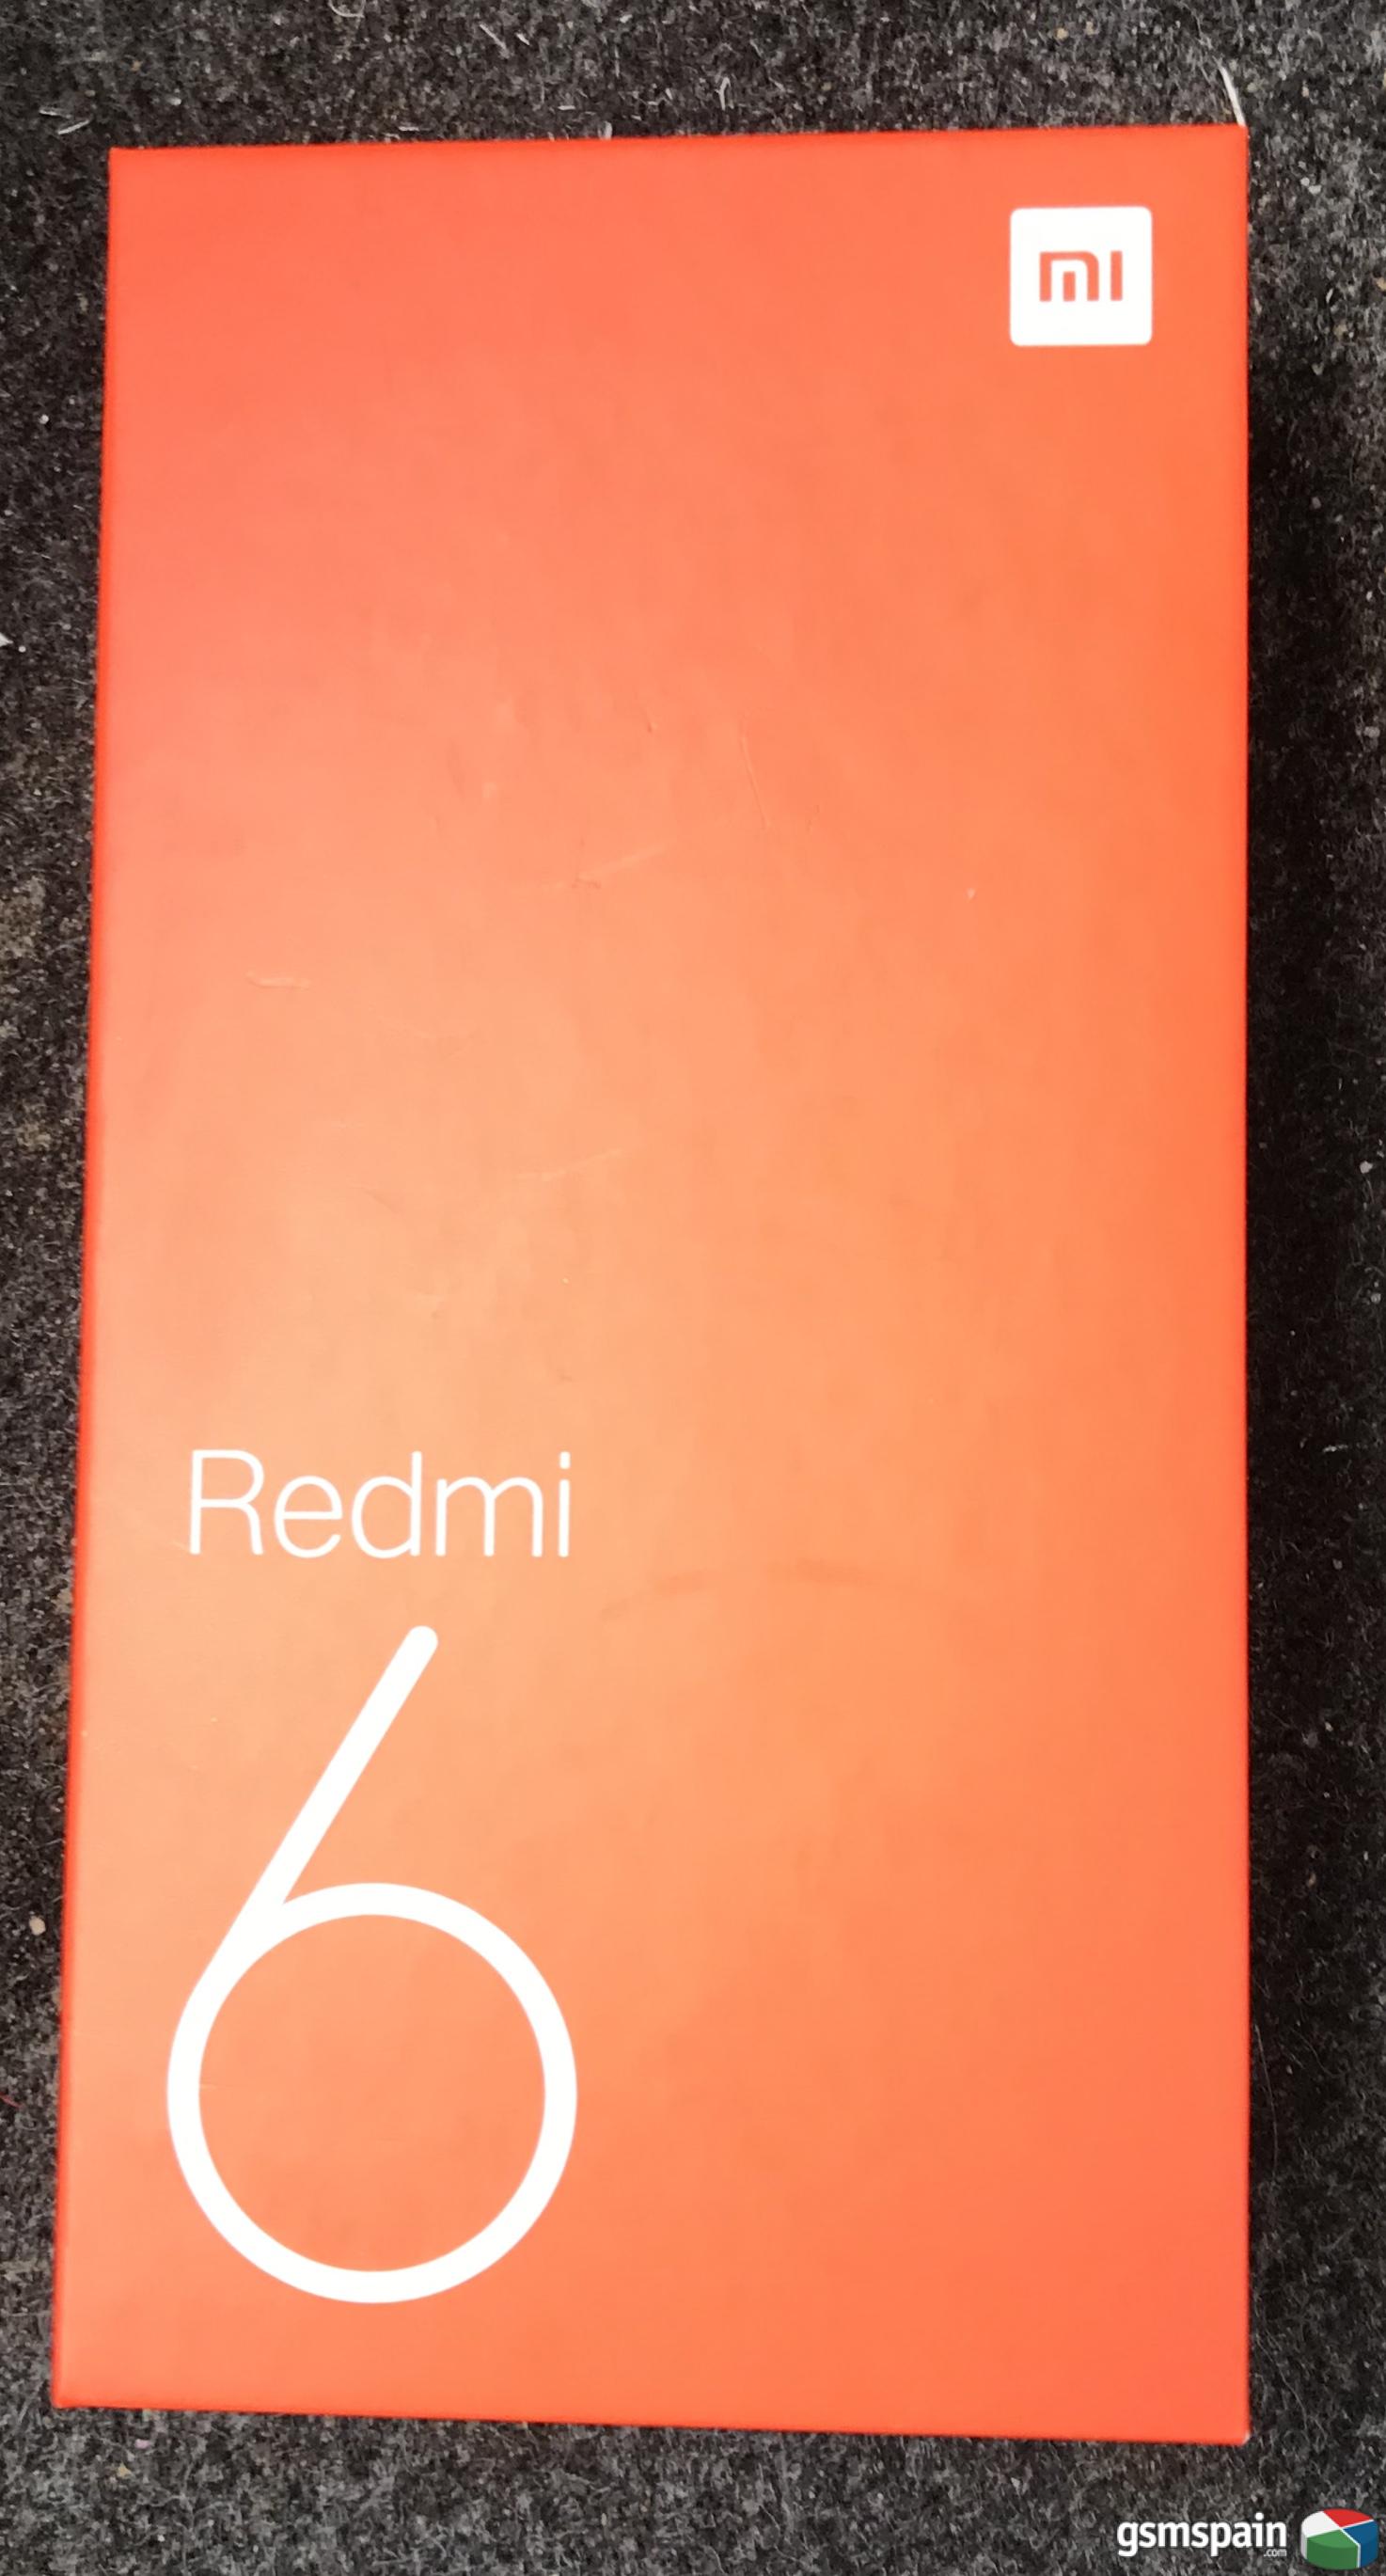 [VENDO] Xiaomi Redmi 6 sin desprecintar